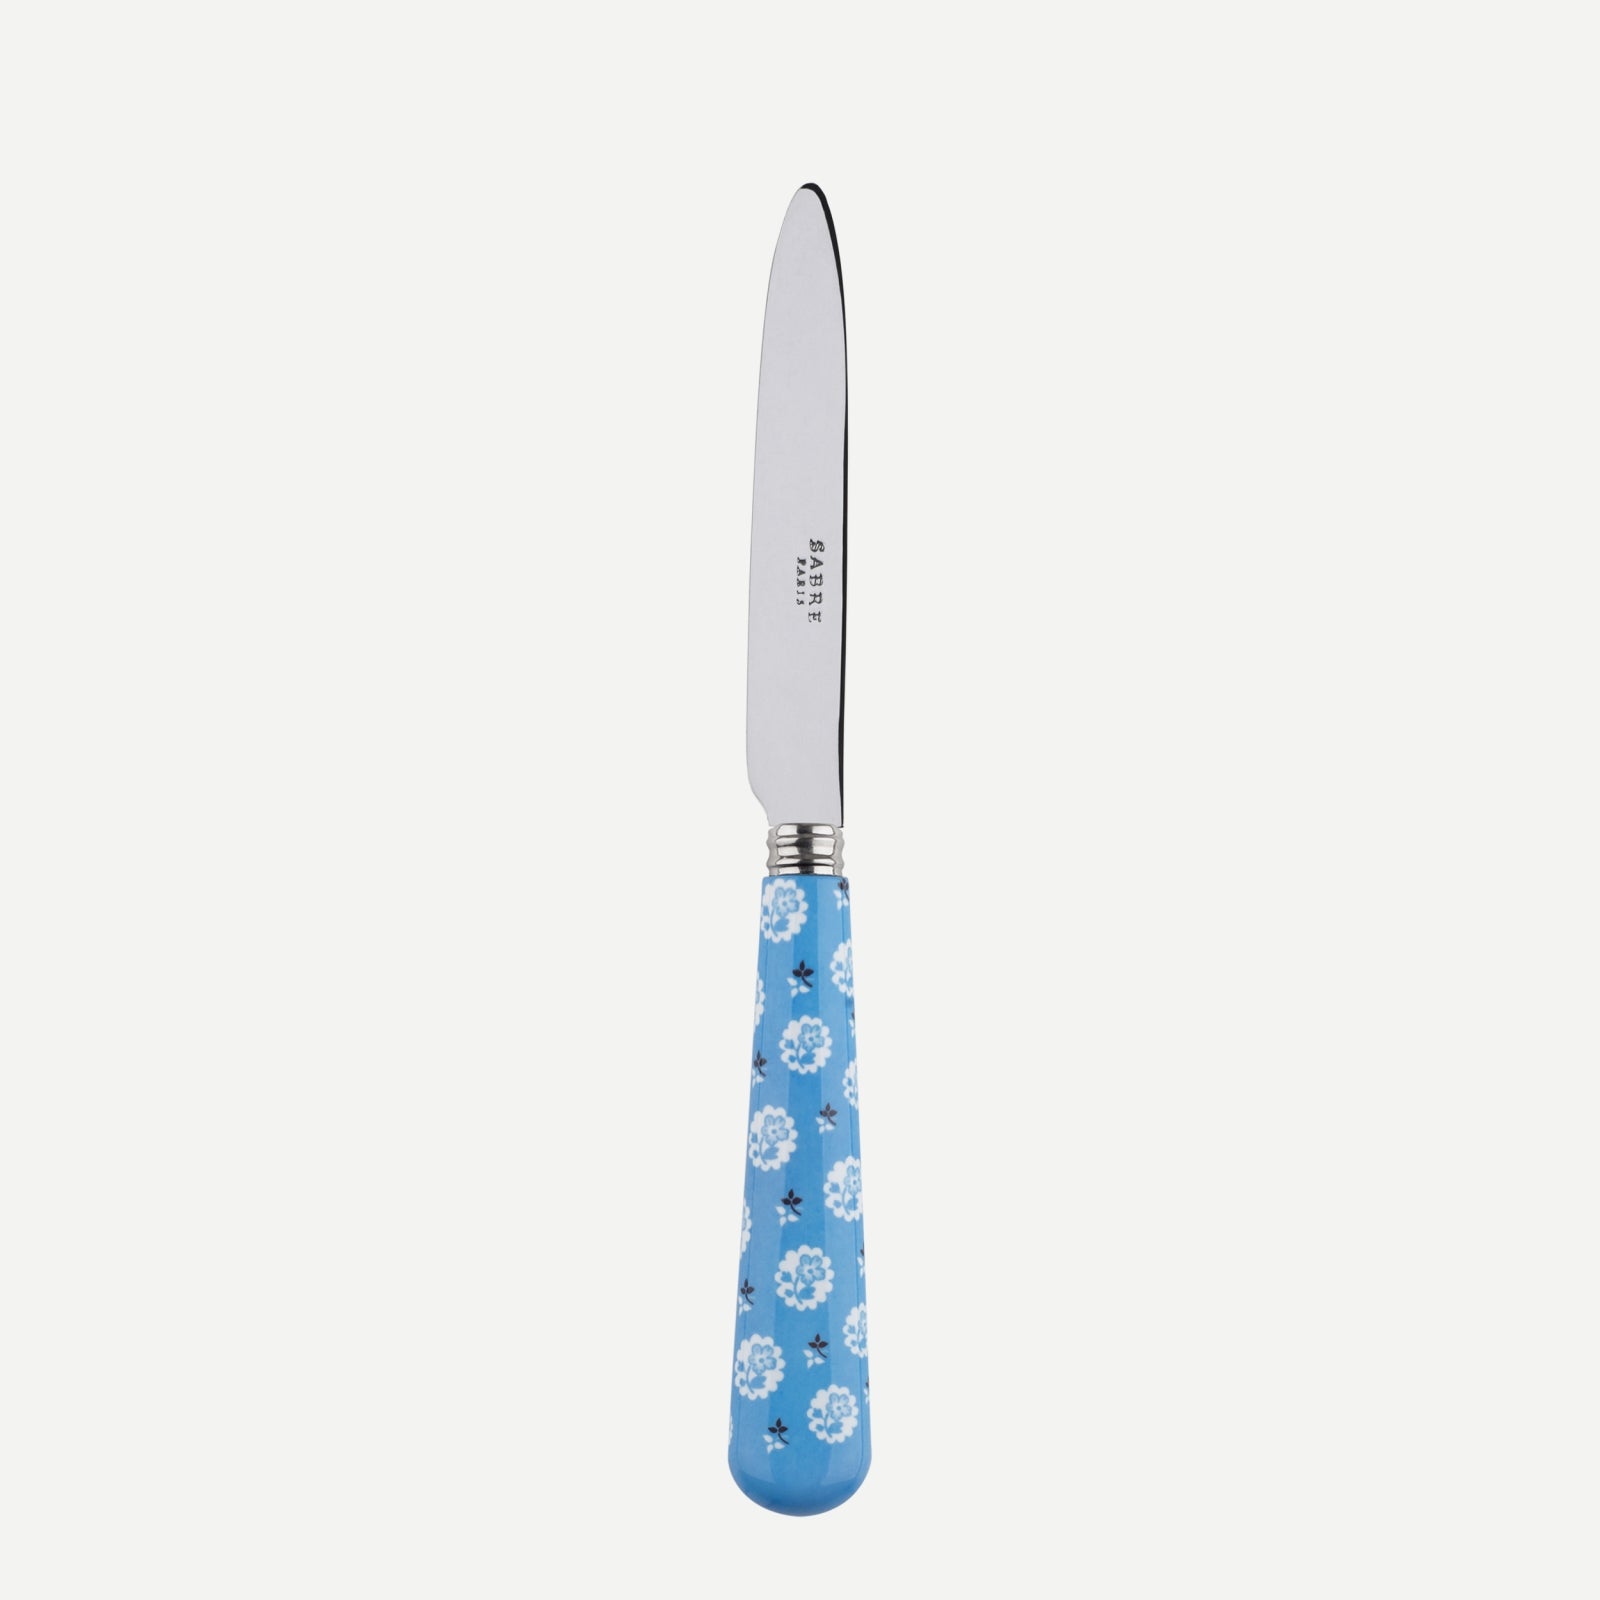 Dessert knife - Provencal - Light blue